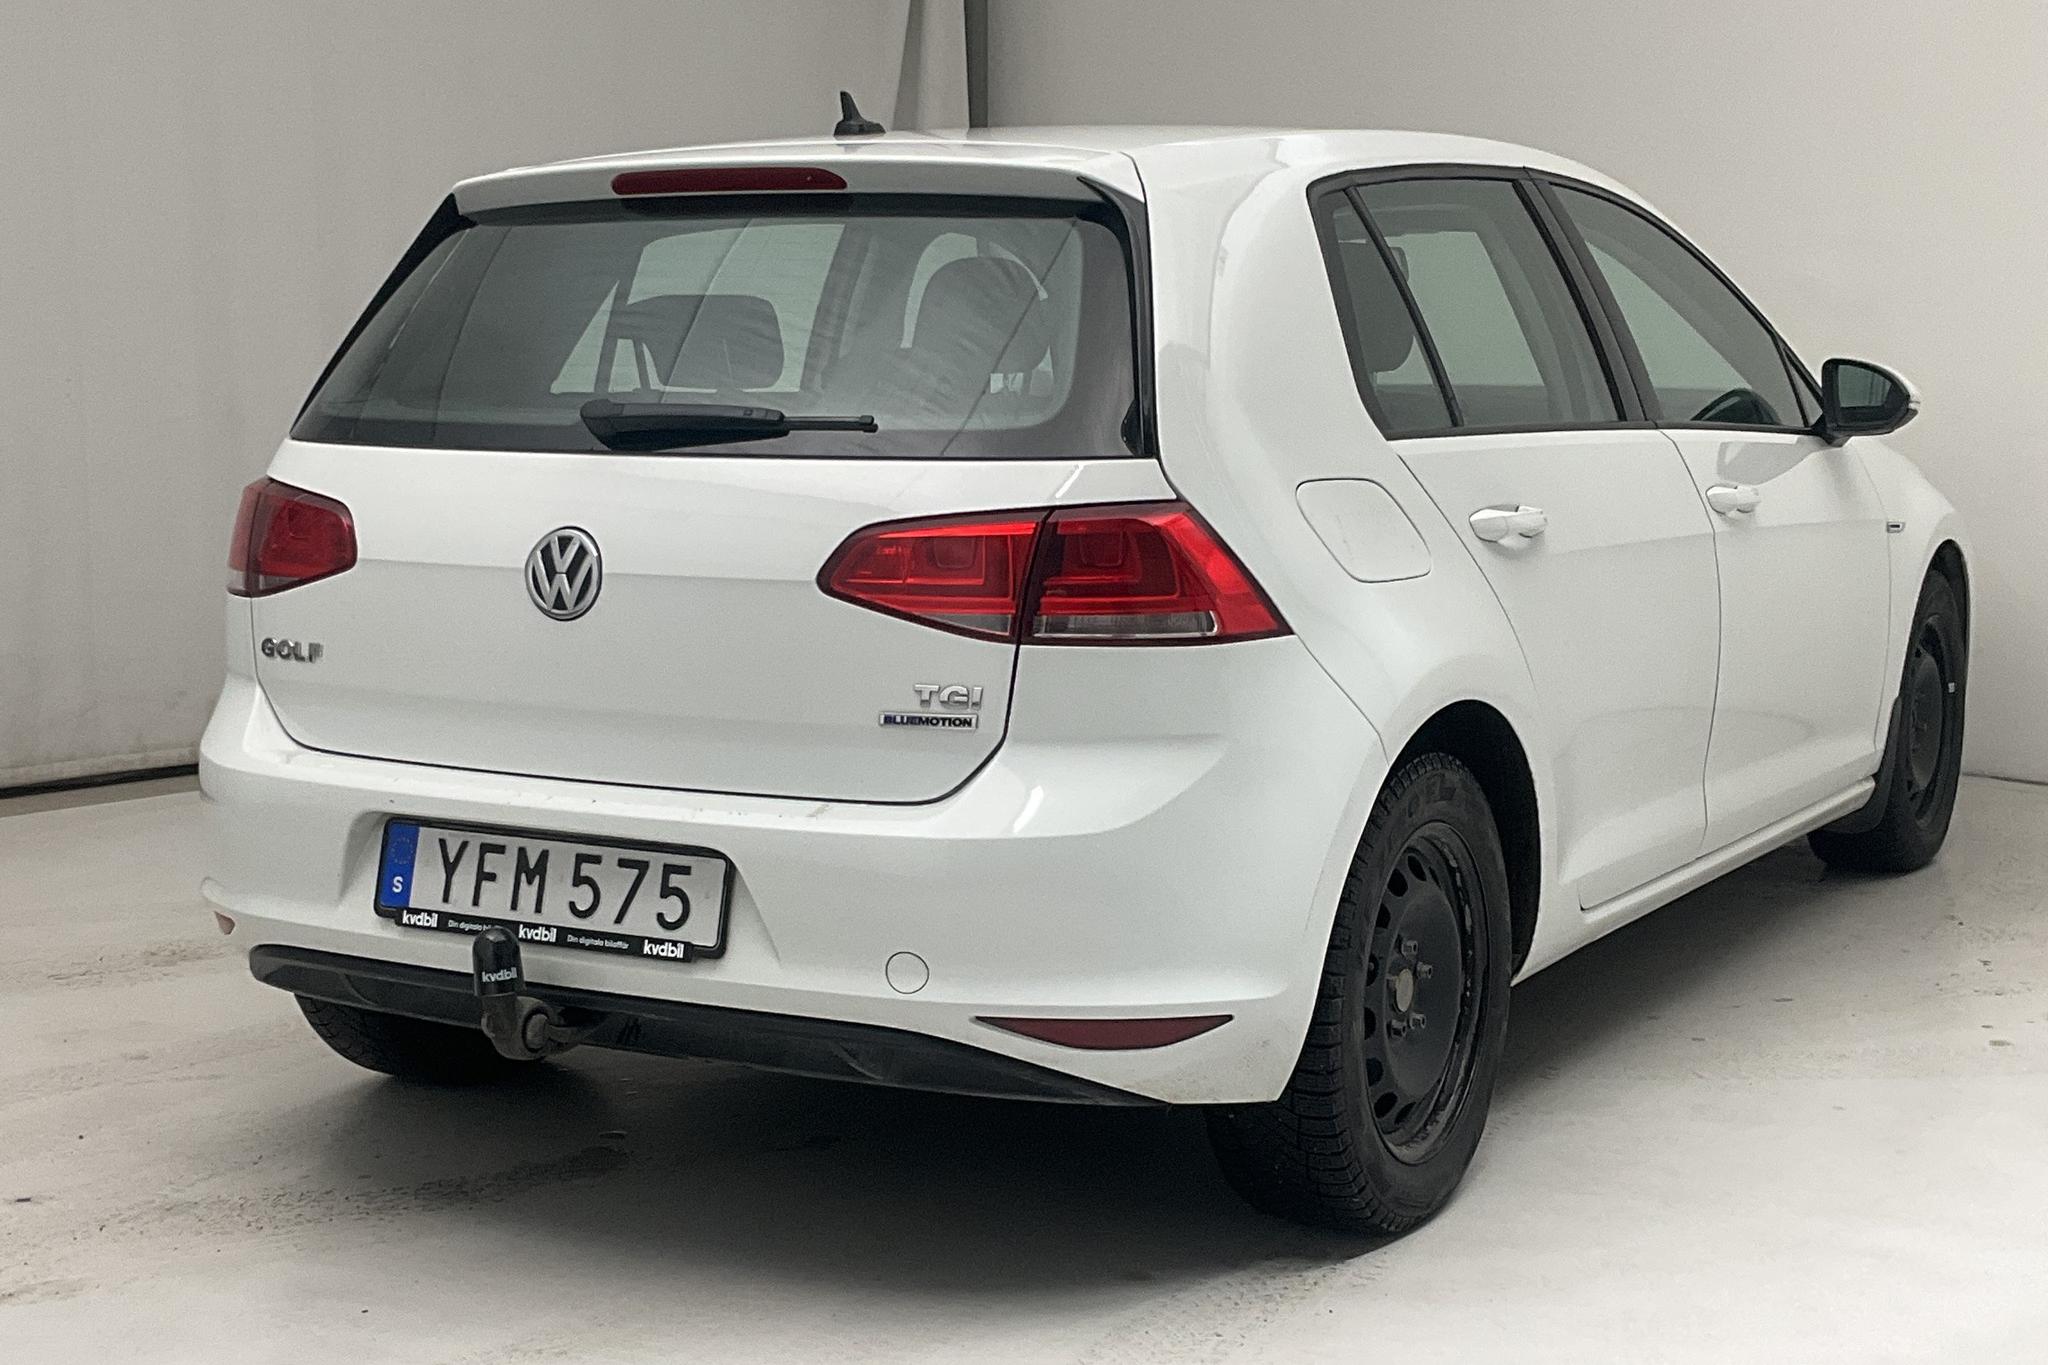 VW Golf VII 1.4 TGI 5dr (110hk) - 116 490 km - Automatic - white - 2017